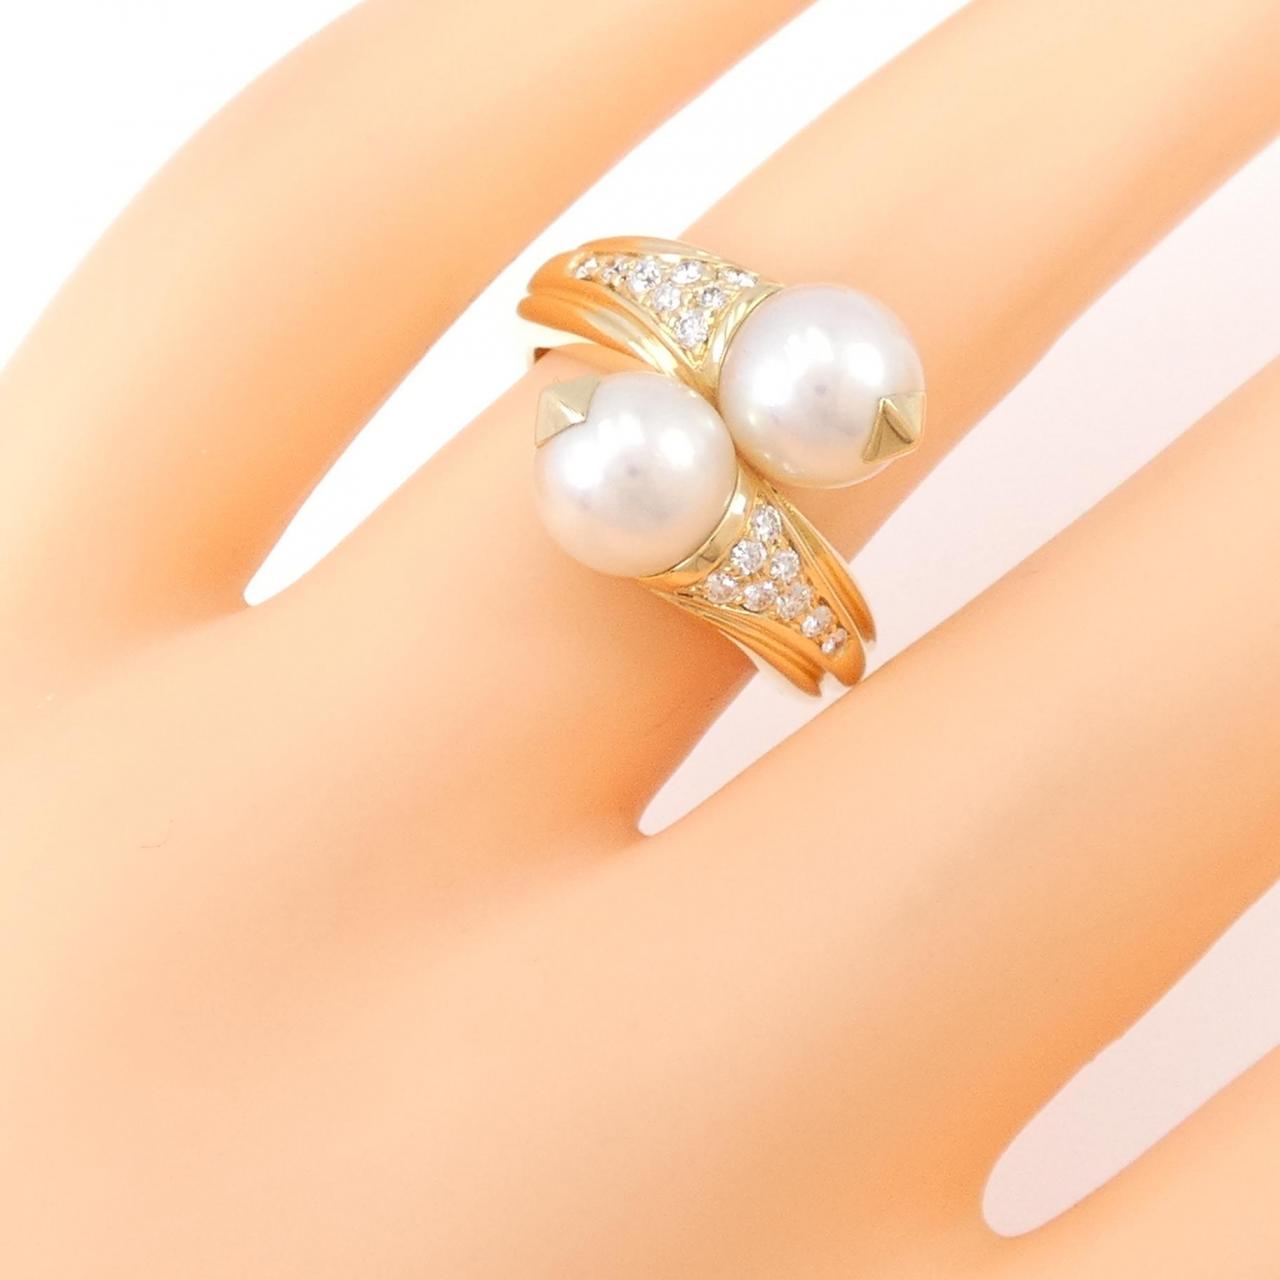 BVLGARI coya pearl ring